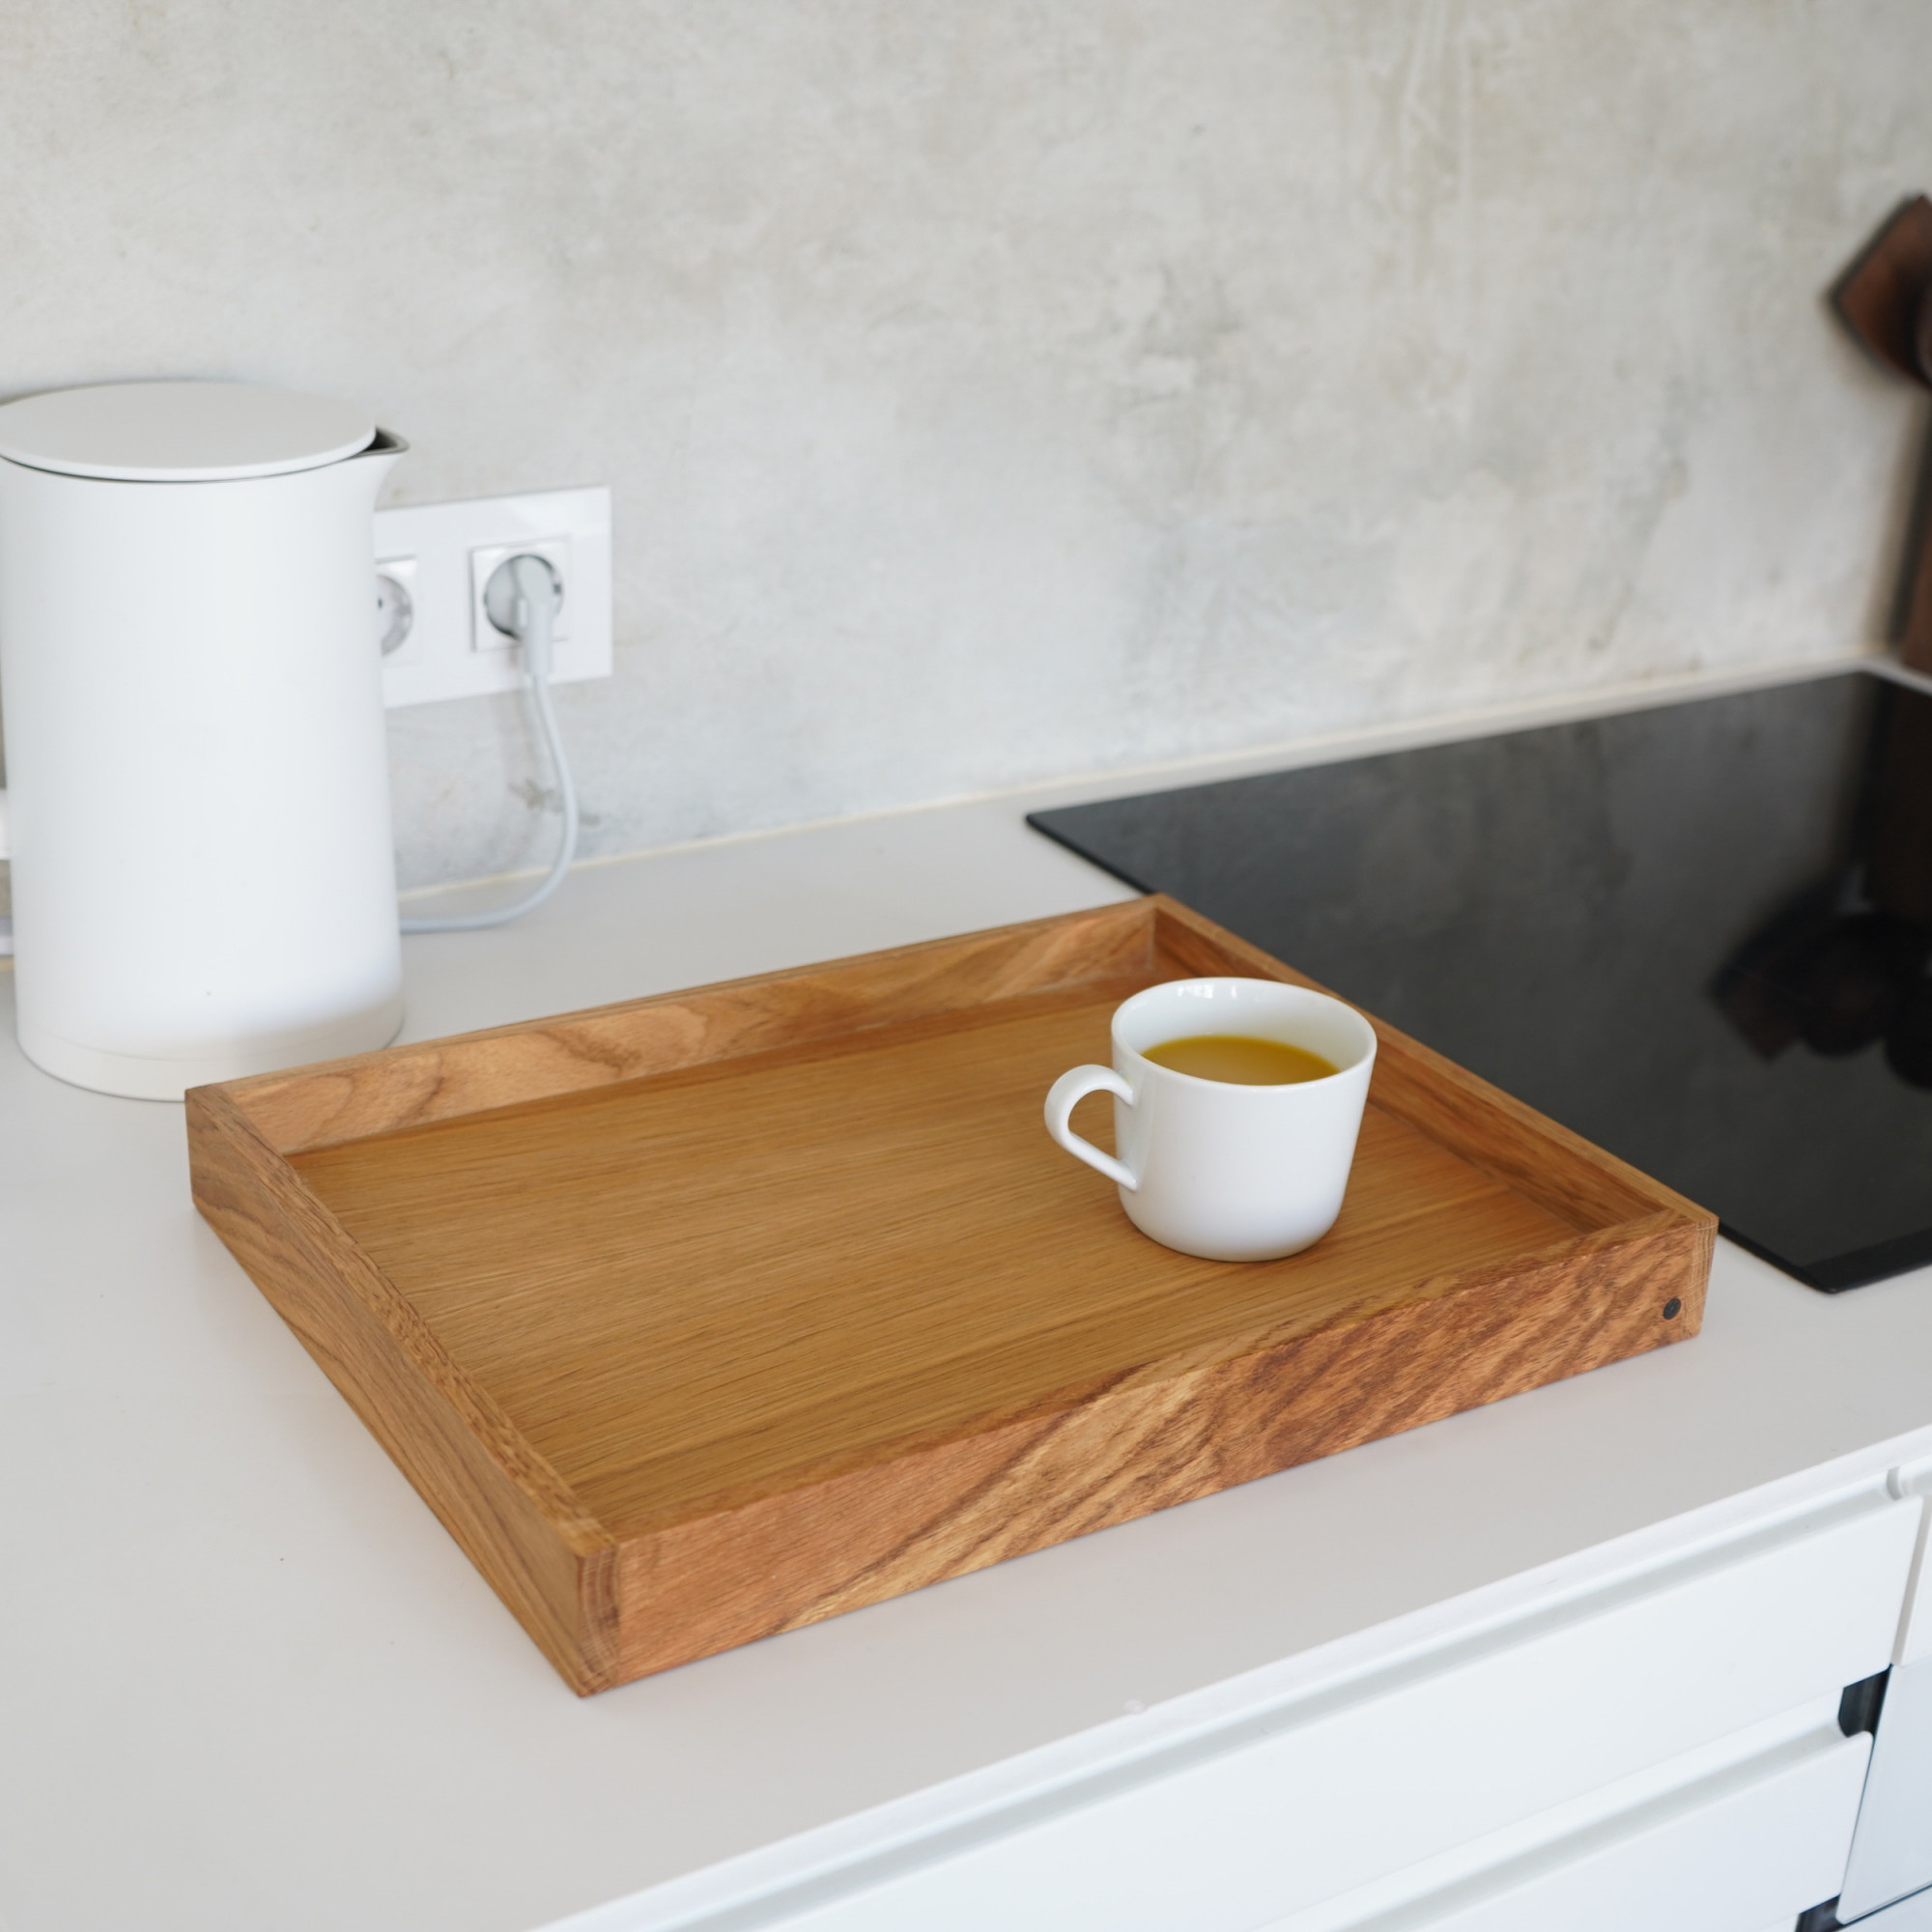 Medium Oak Tablett auf Küchenarbeitsplatte